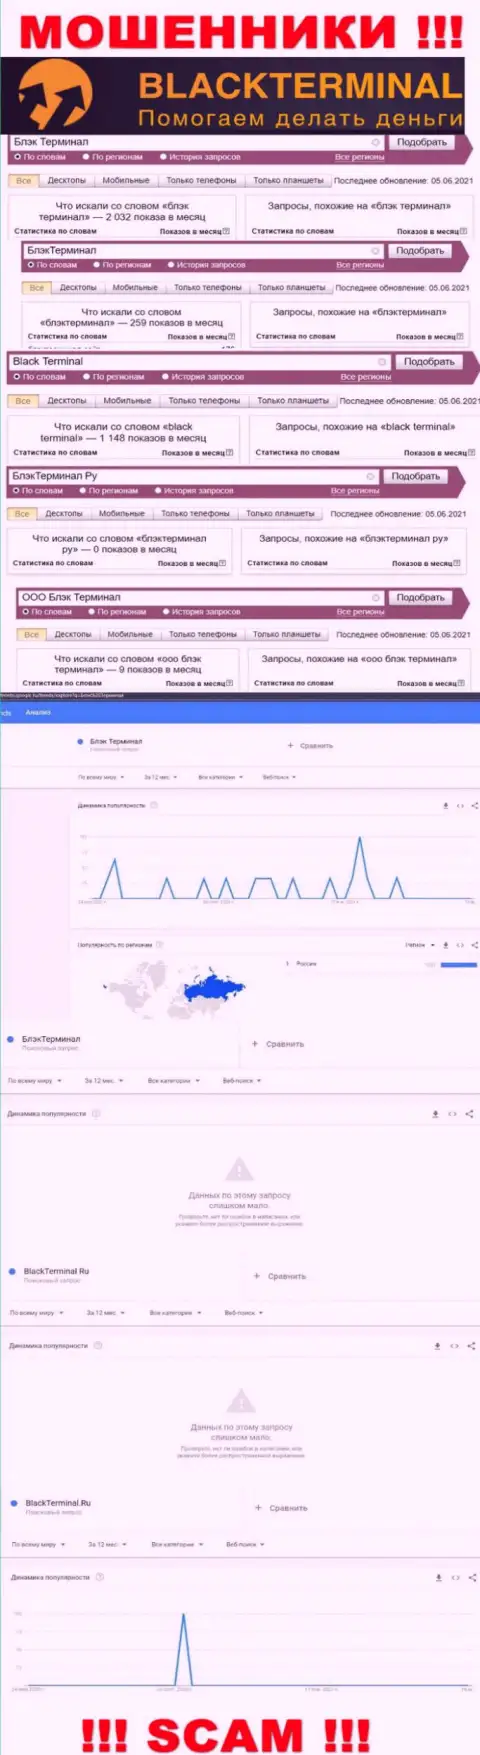 Количество онлайн-запросов данных о мошенниках BlackTerminal Ru в интернете